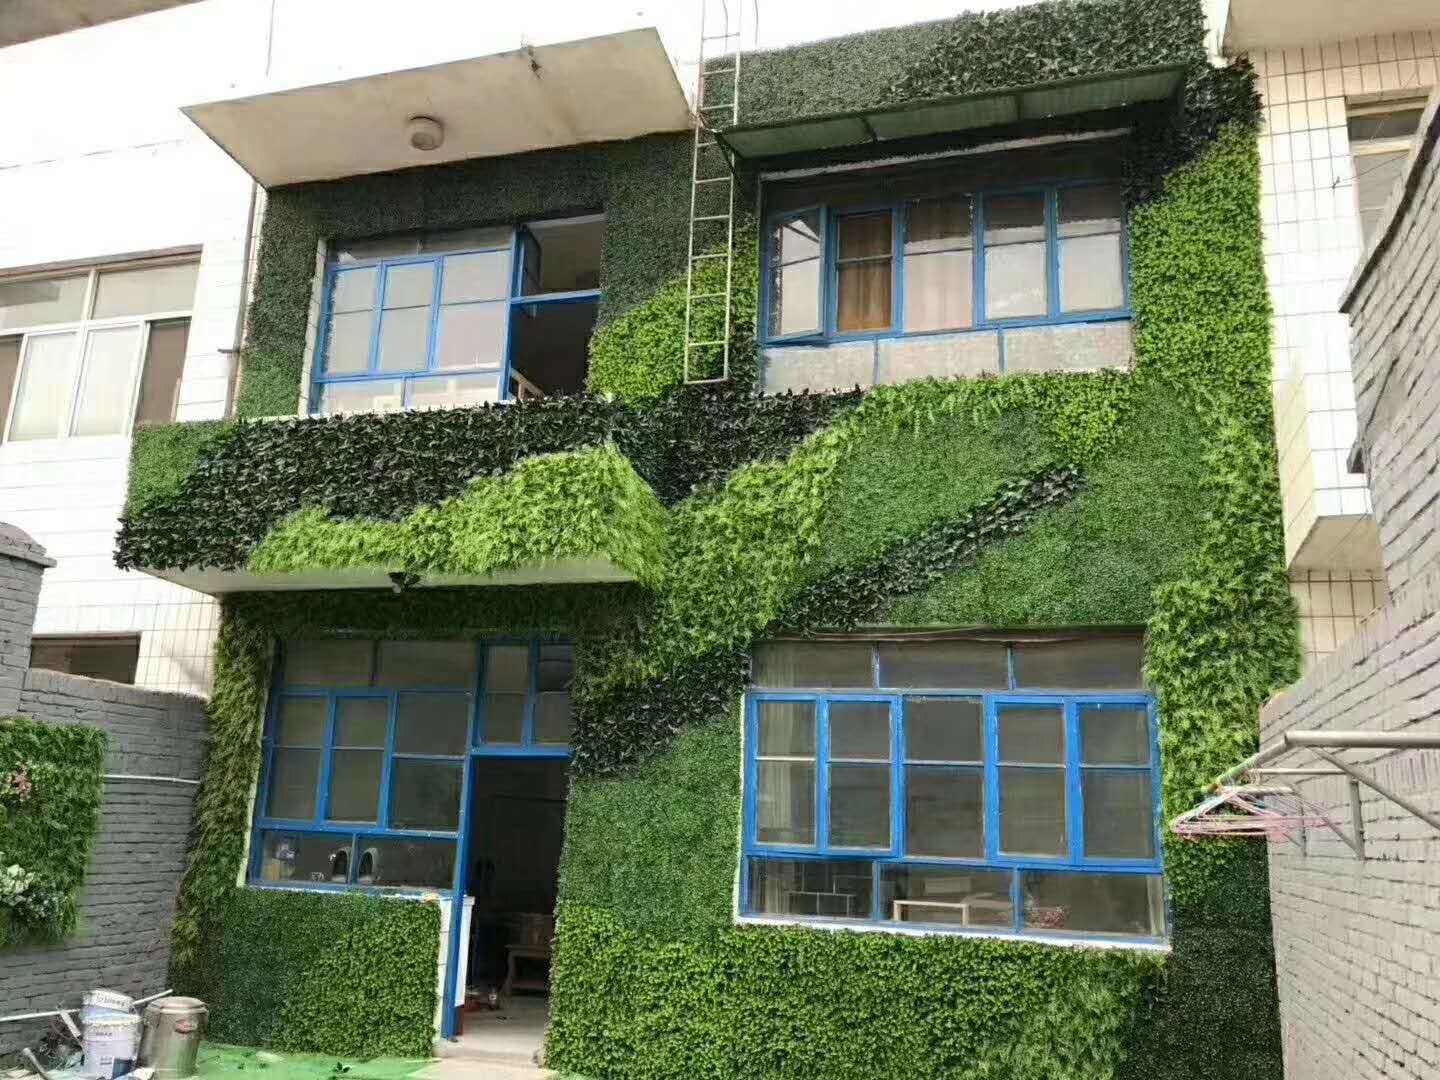 室外抗老化仿真植物墙十余种颜色外墙绿植装饰